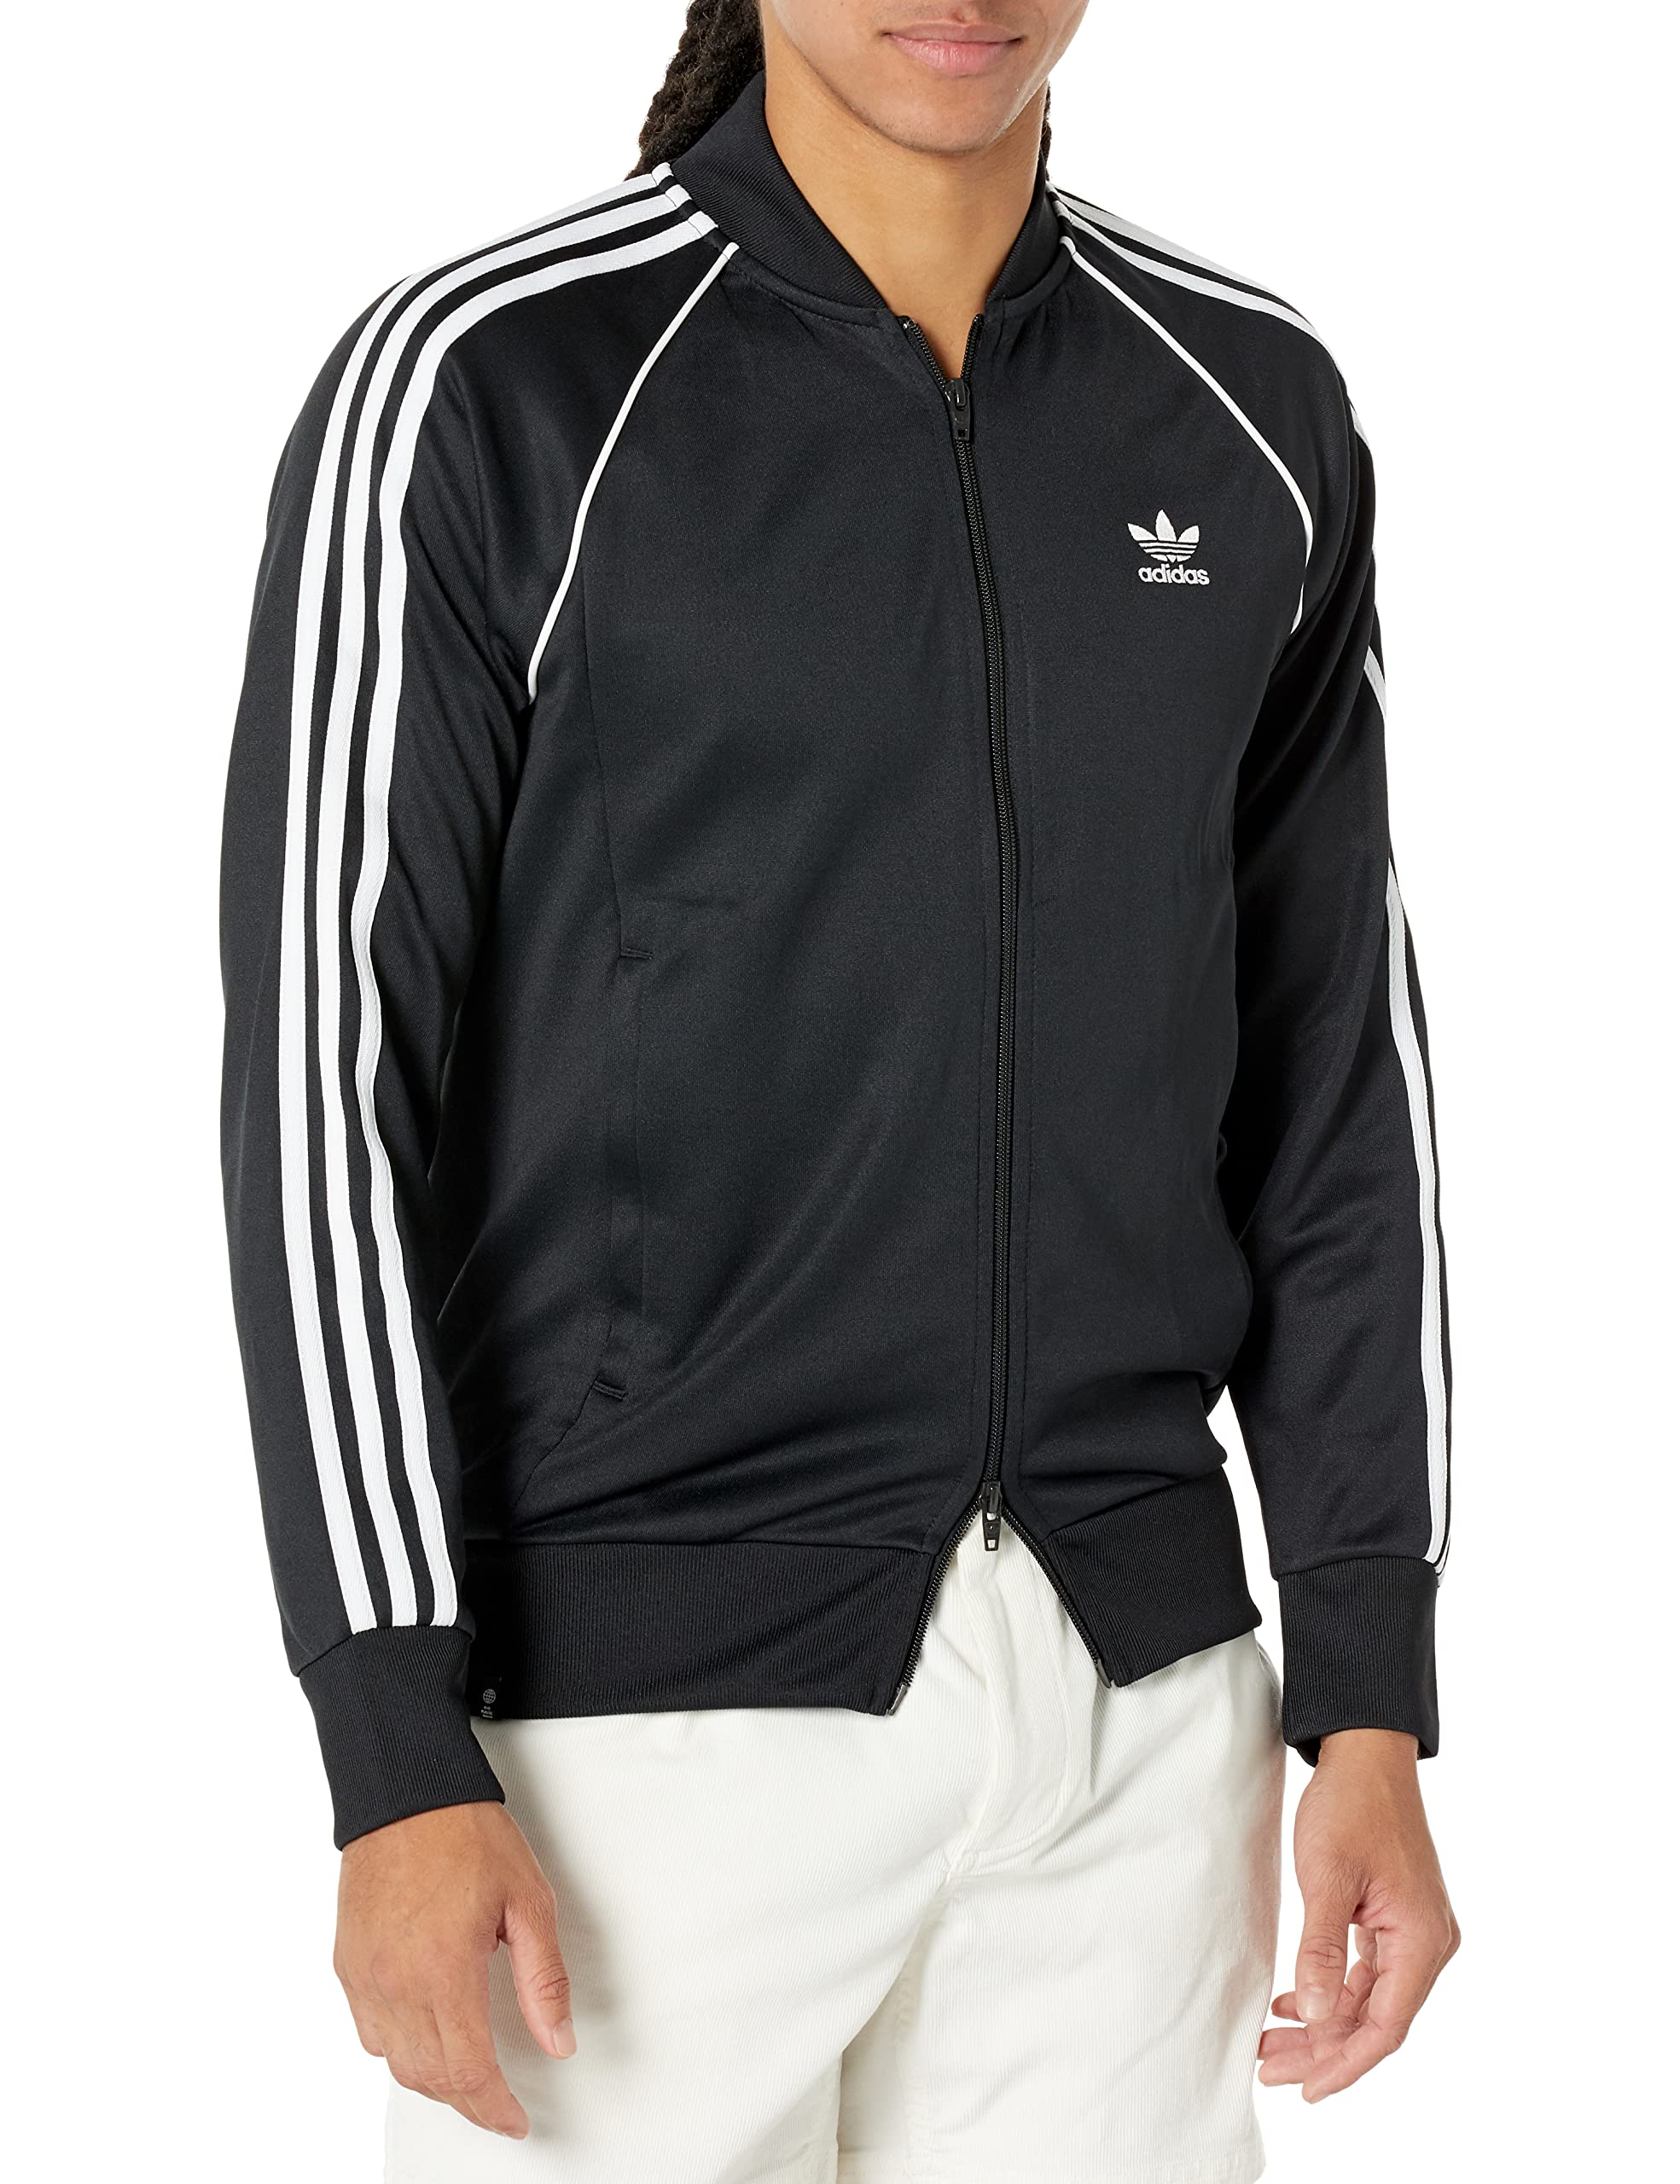 adidas Originals Men's Adicolor Classics Primeblue SST Track Jacket X-Large  Black/White